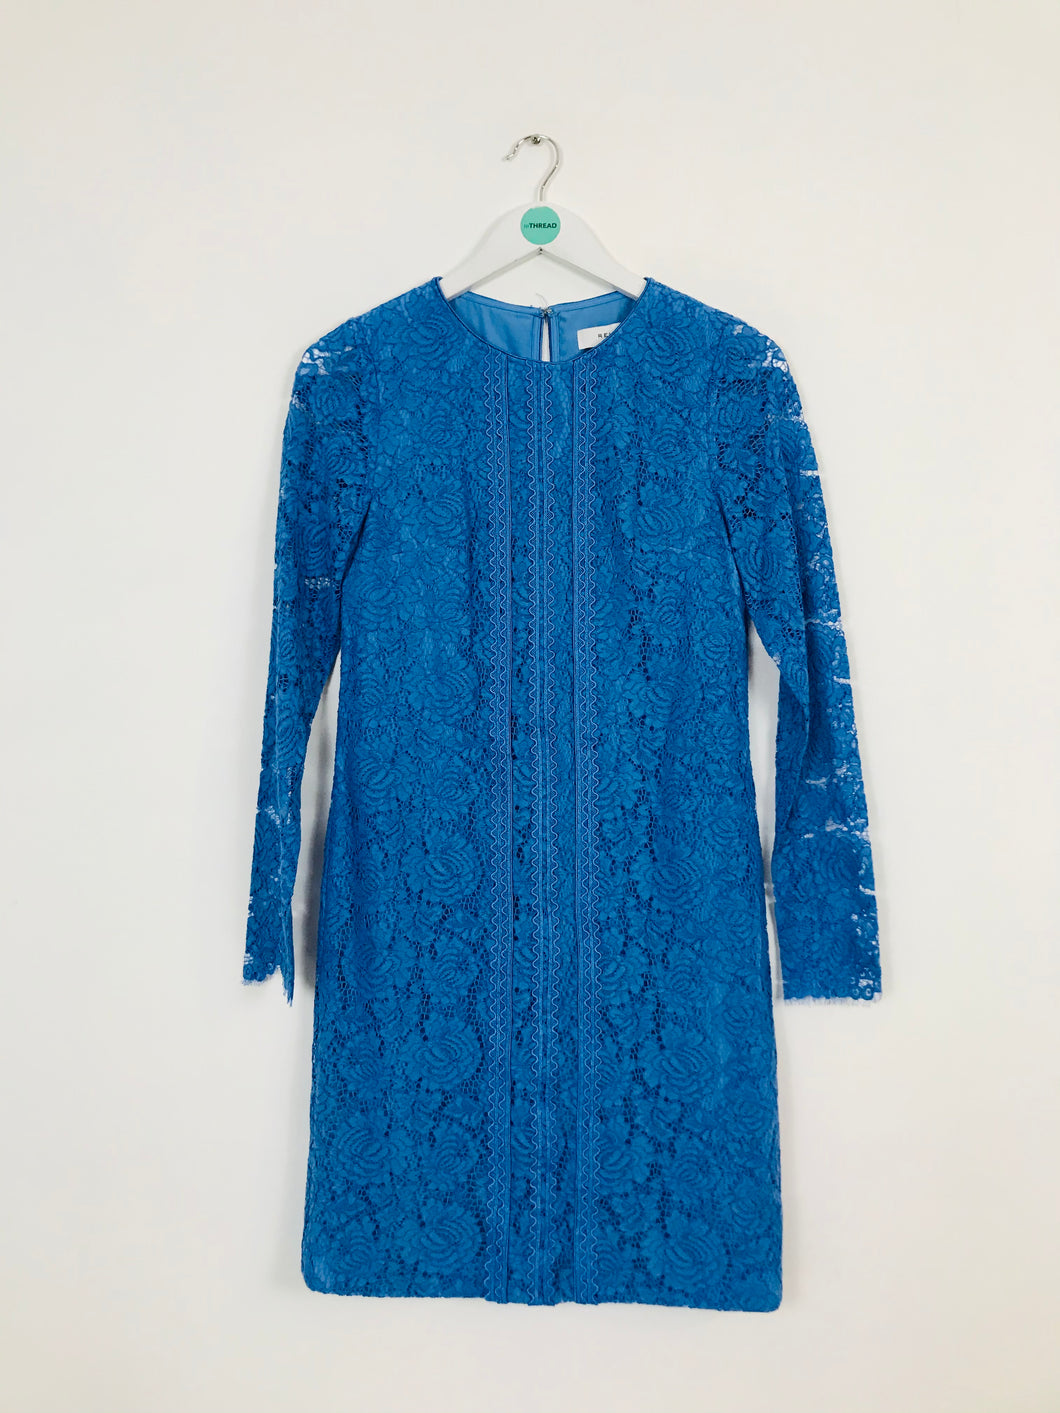 Reiss Women’s Lace Long Sleeve Sheath Dress | UK8 | Blue